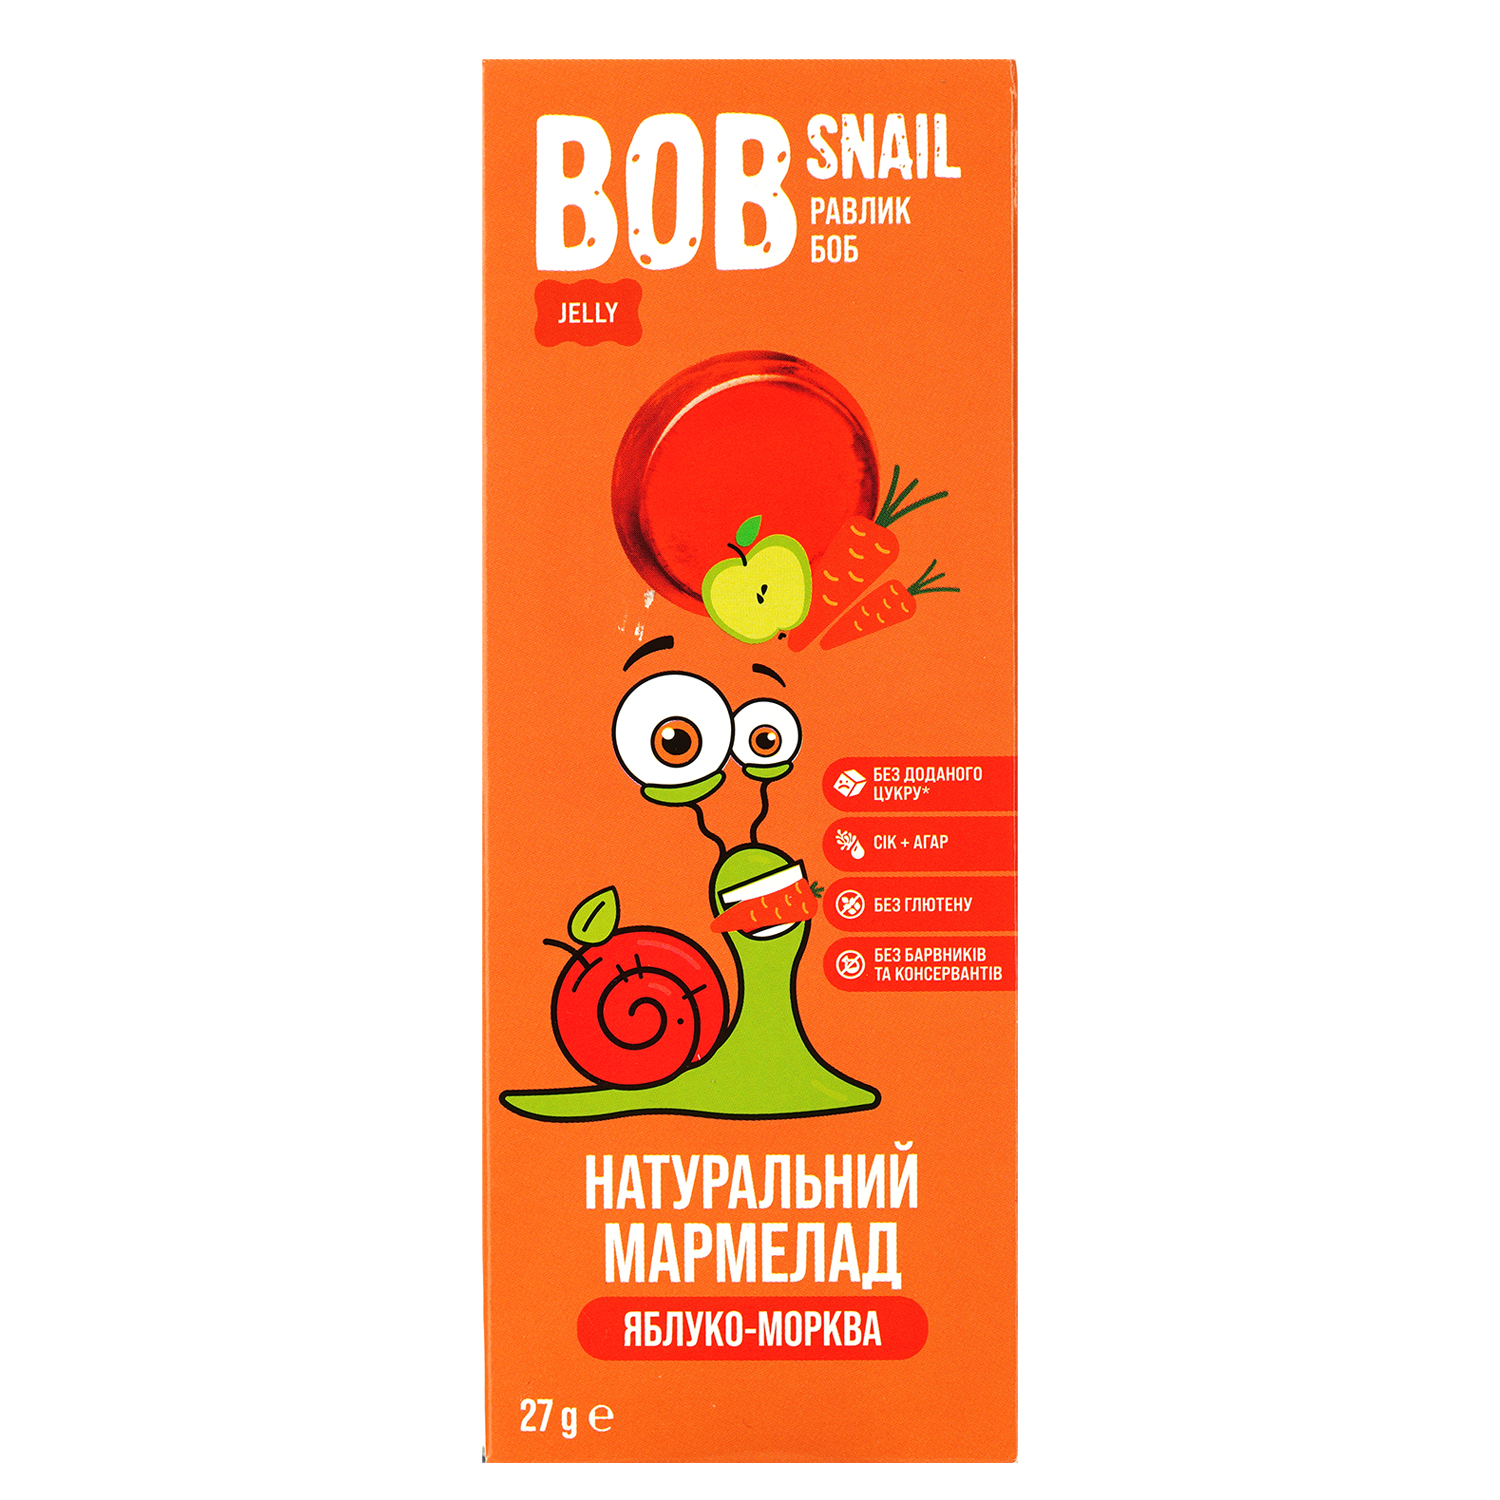 Фруктово-овочевий мармелад Bob Snail Яблуко-Морква 27 г - фото 1